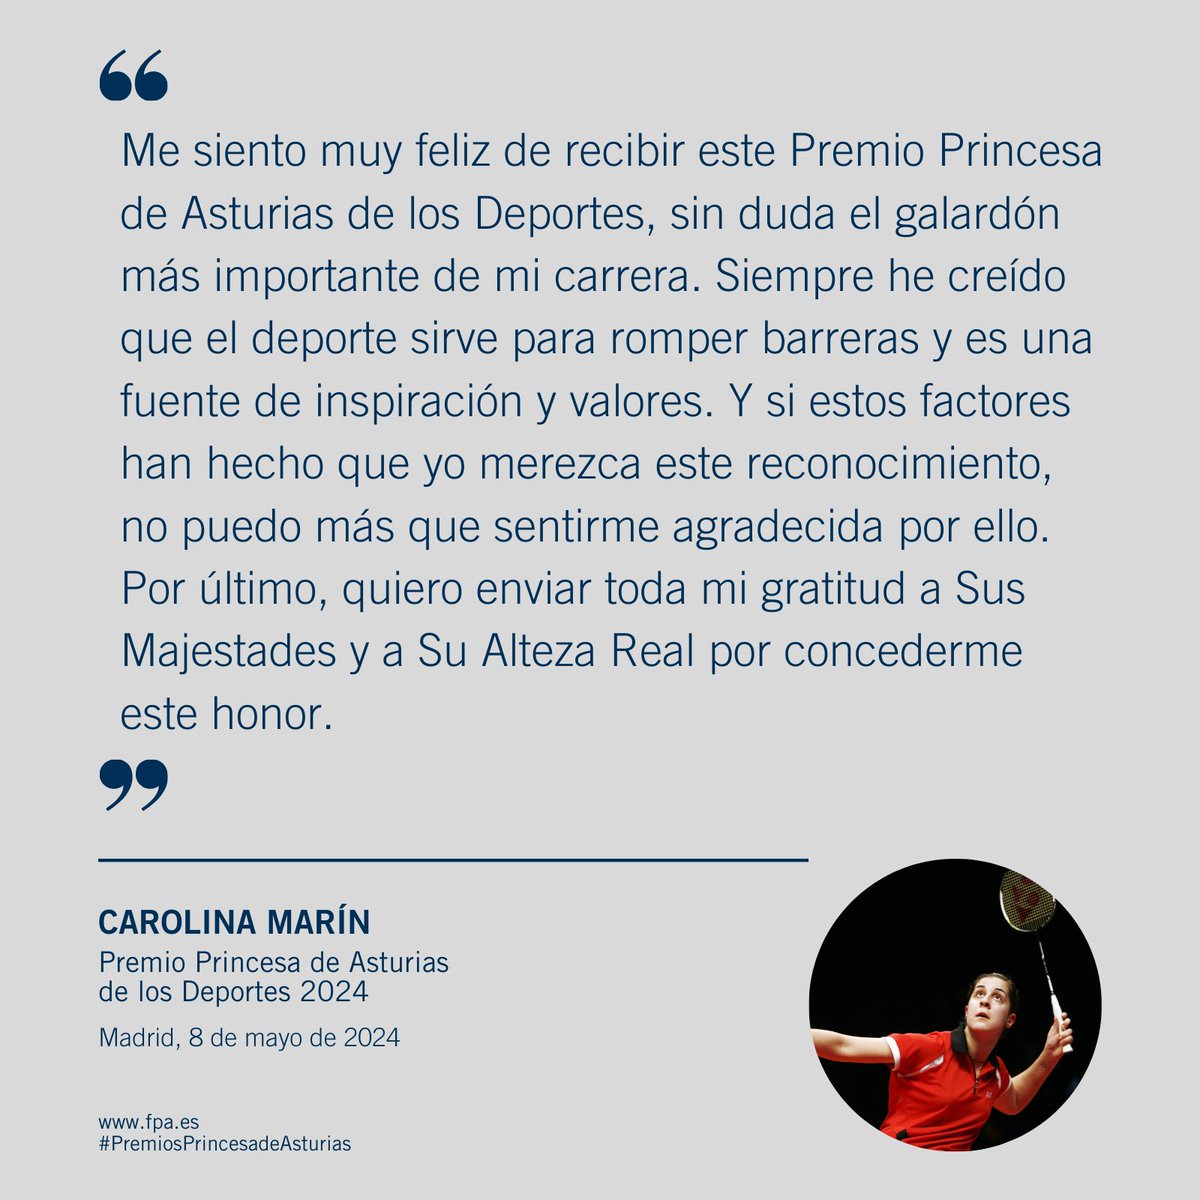 Declaraciones de @CarolinaMarin tras la concesión del Premio Princesa de Asturias de los Deportes 2024.
#PremiosPrincesadeAsturias